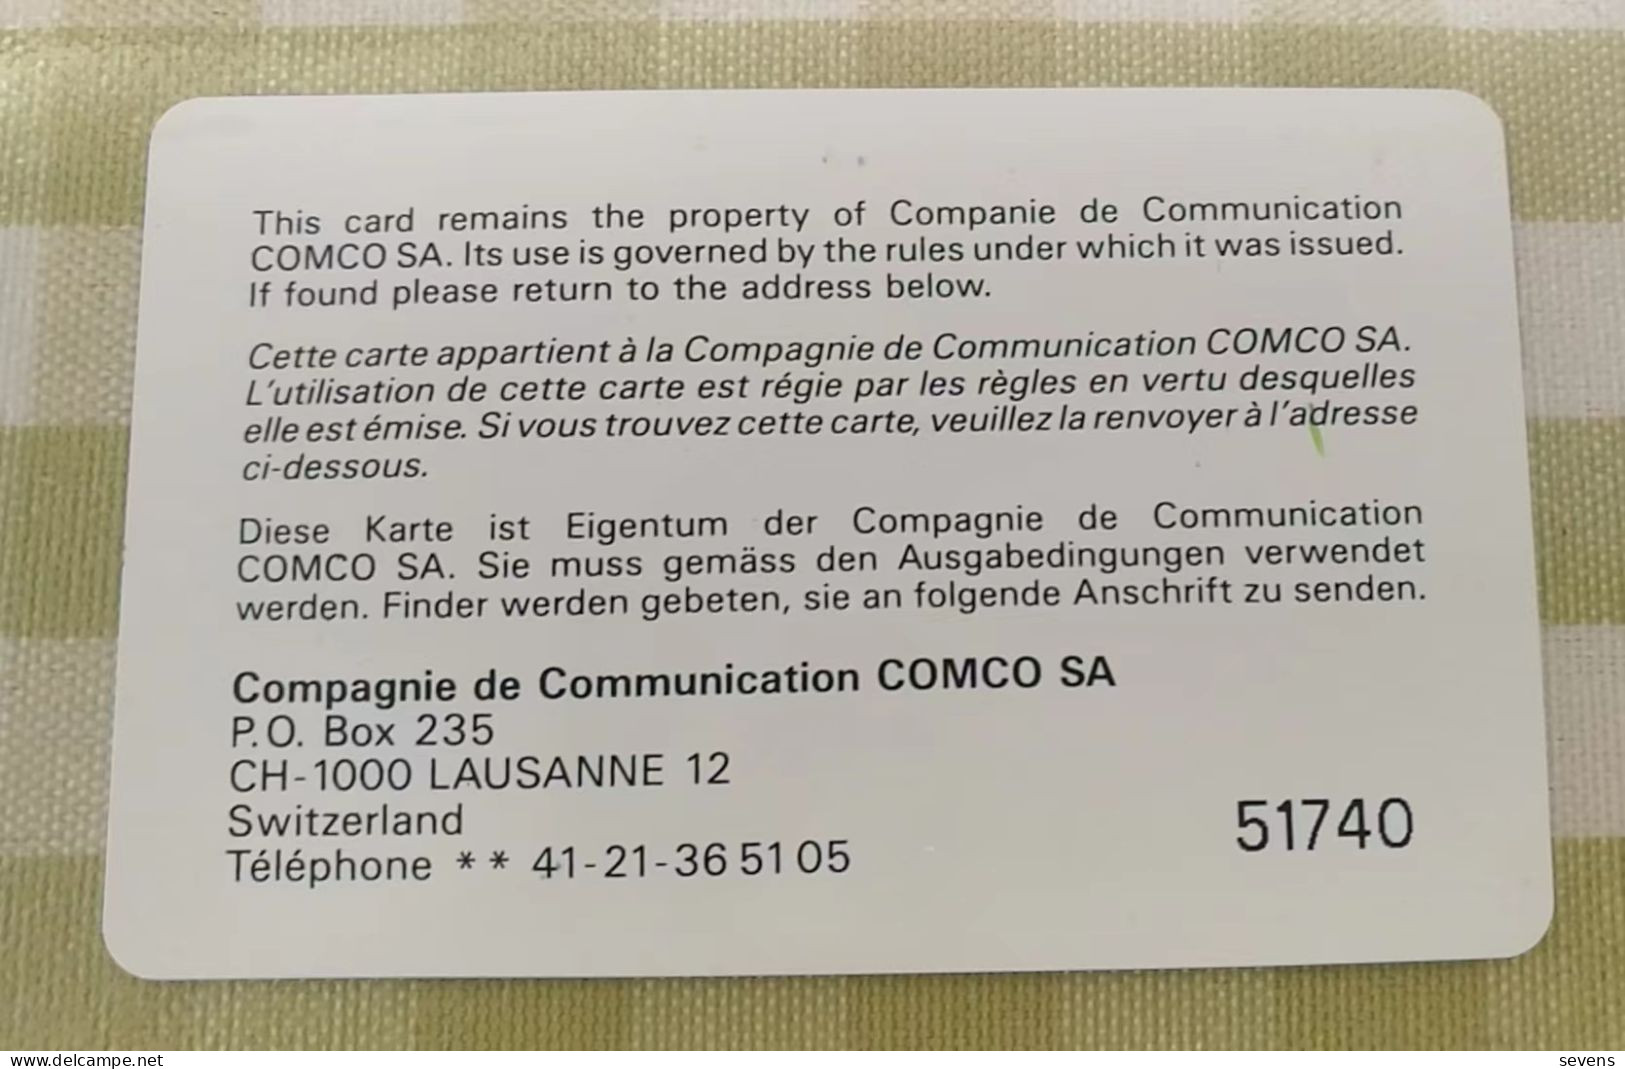 COMCO SwissLex Chip Card - Switzerland